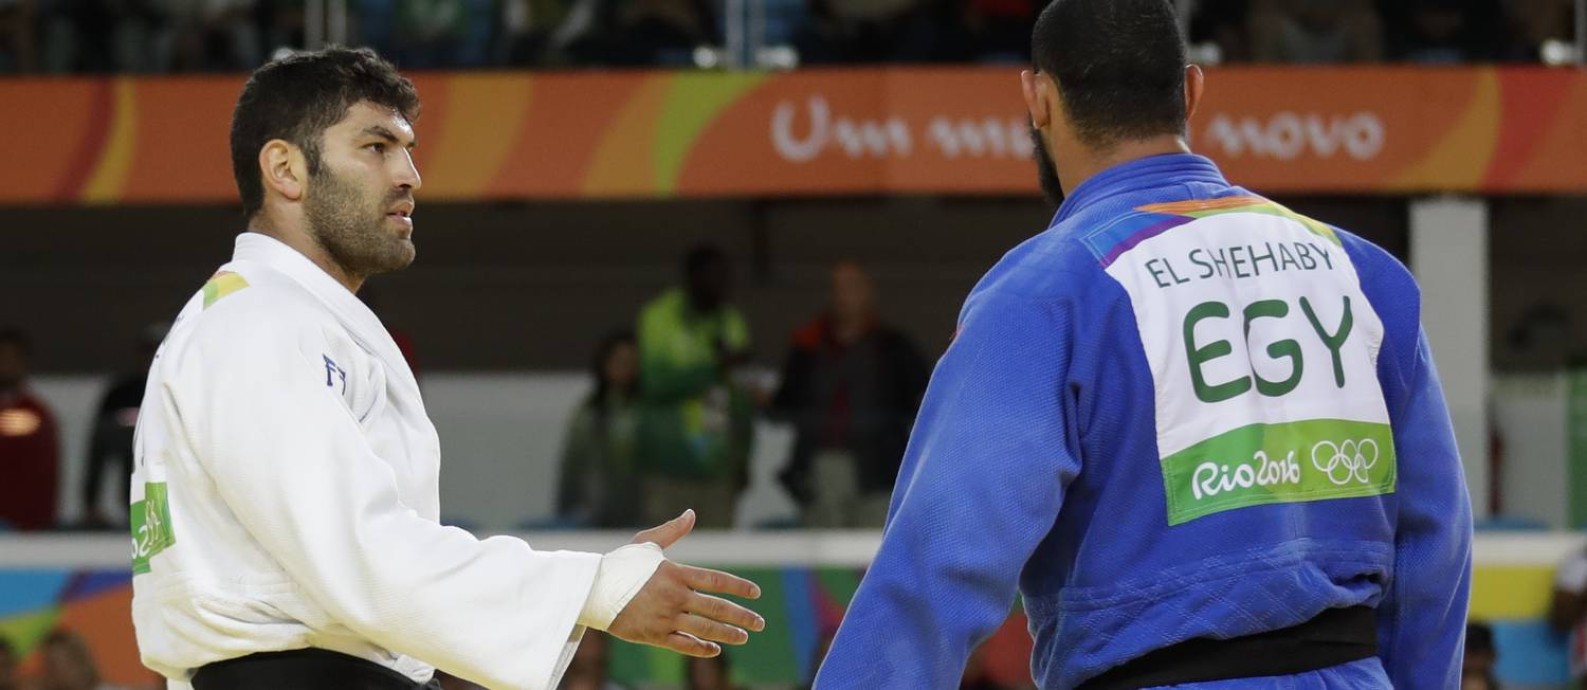 Atleta iraniano é banido após apertar a mão de israelense em campeonato -  Guiame